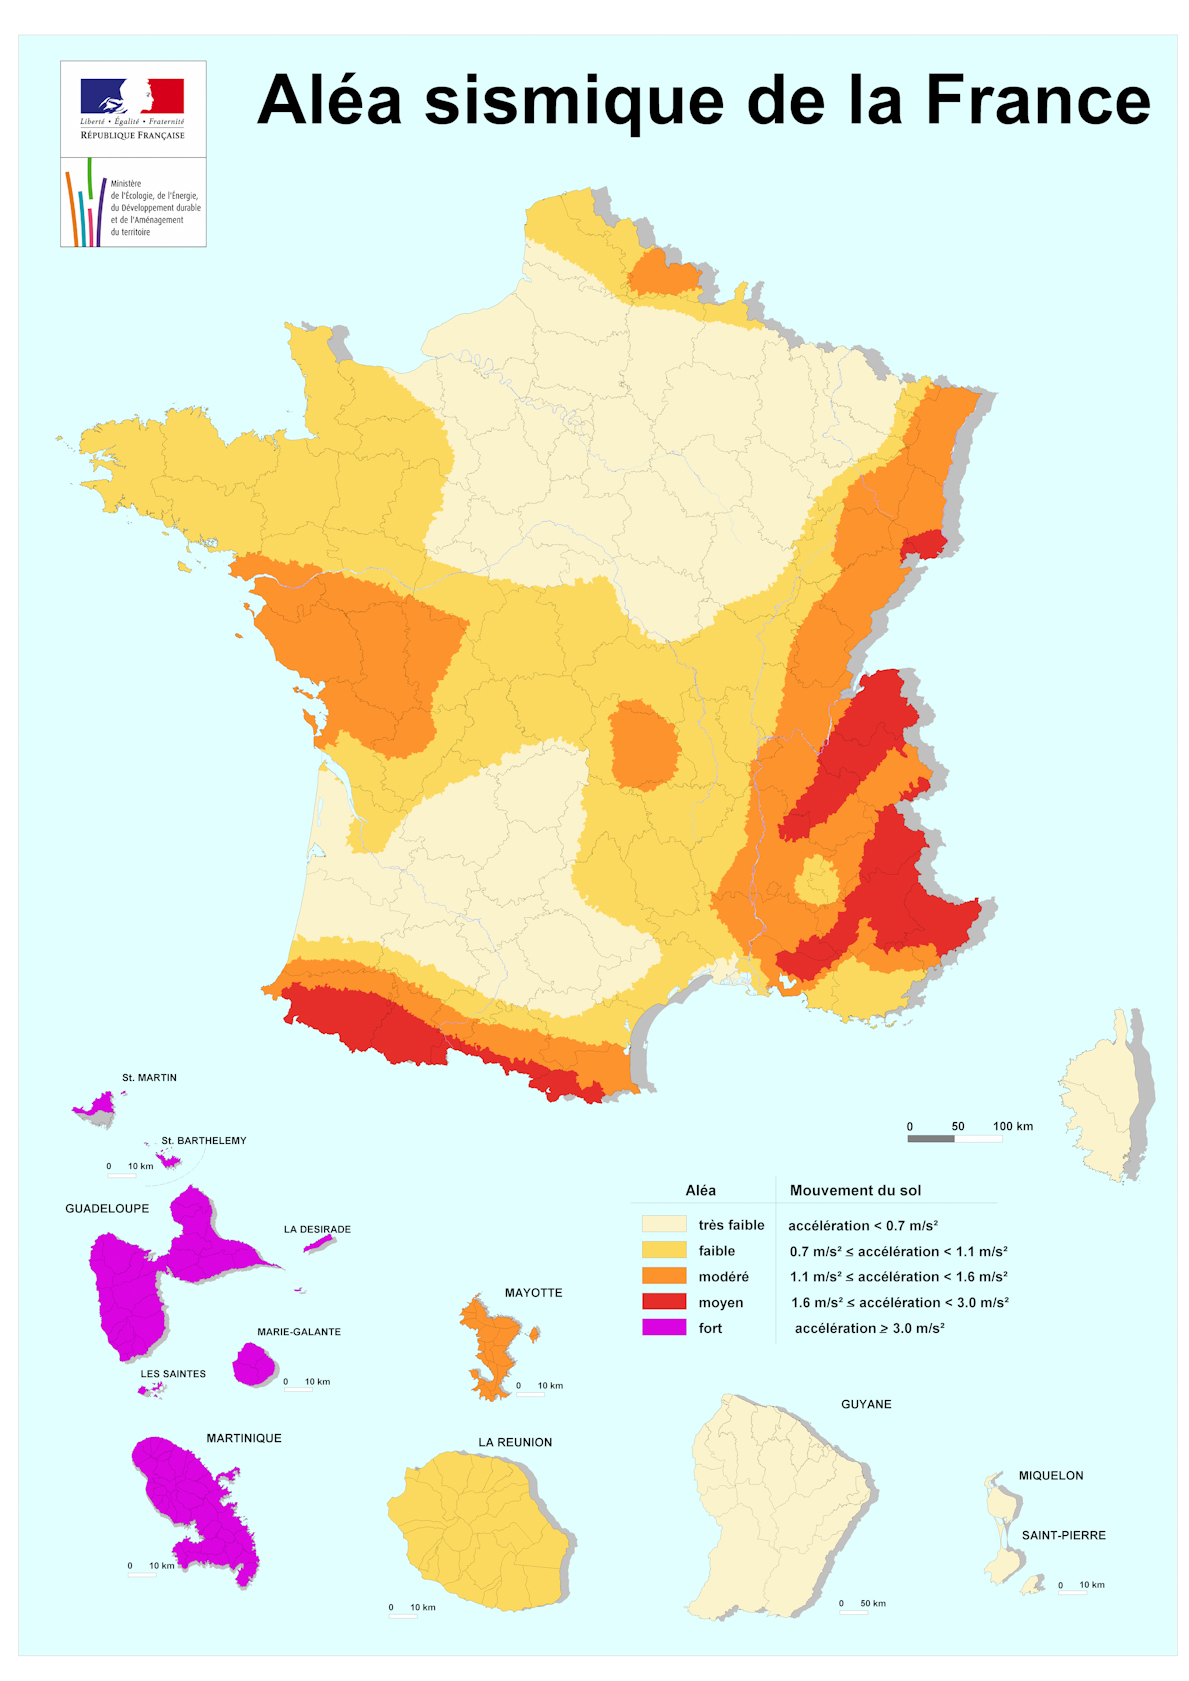 Ala sismique en France